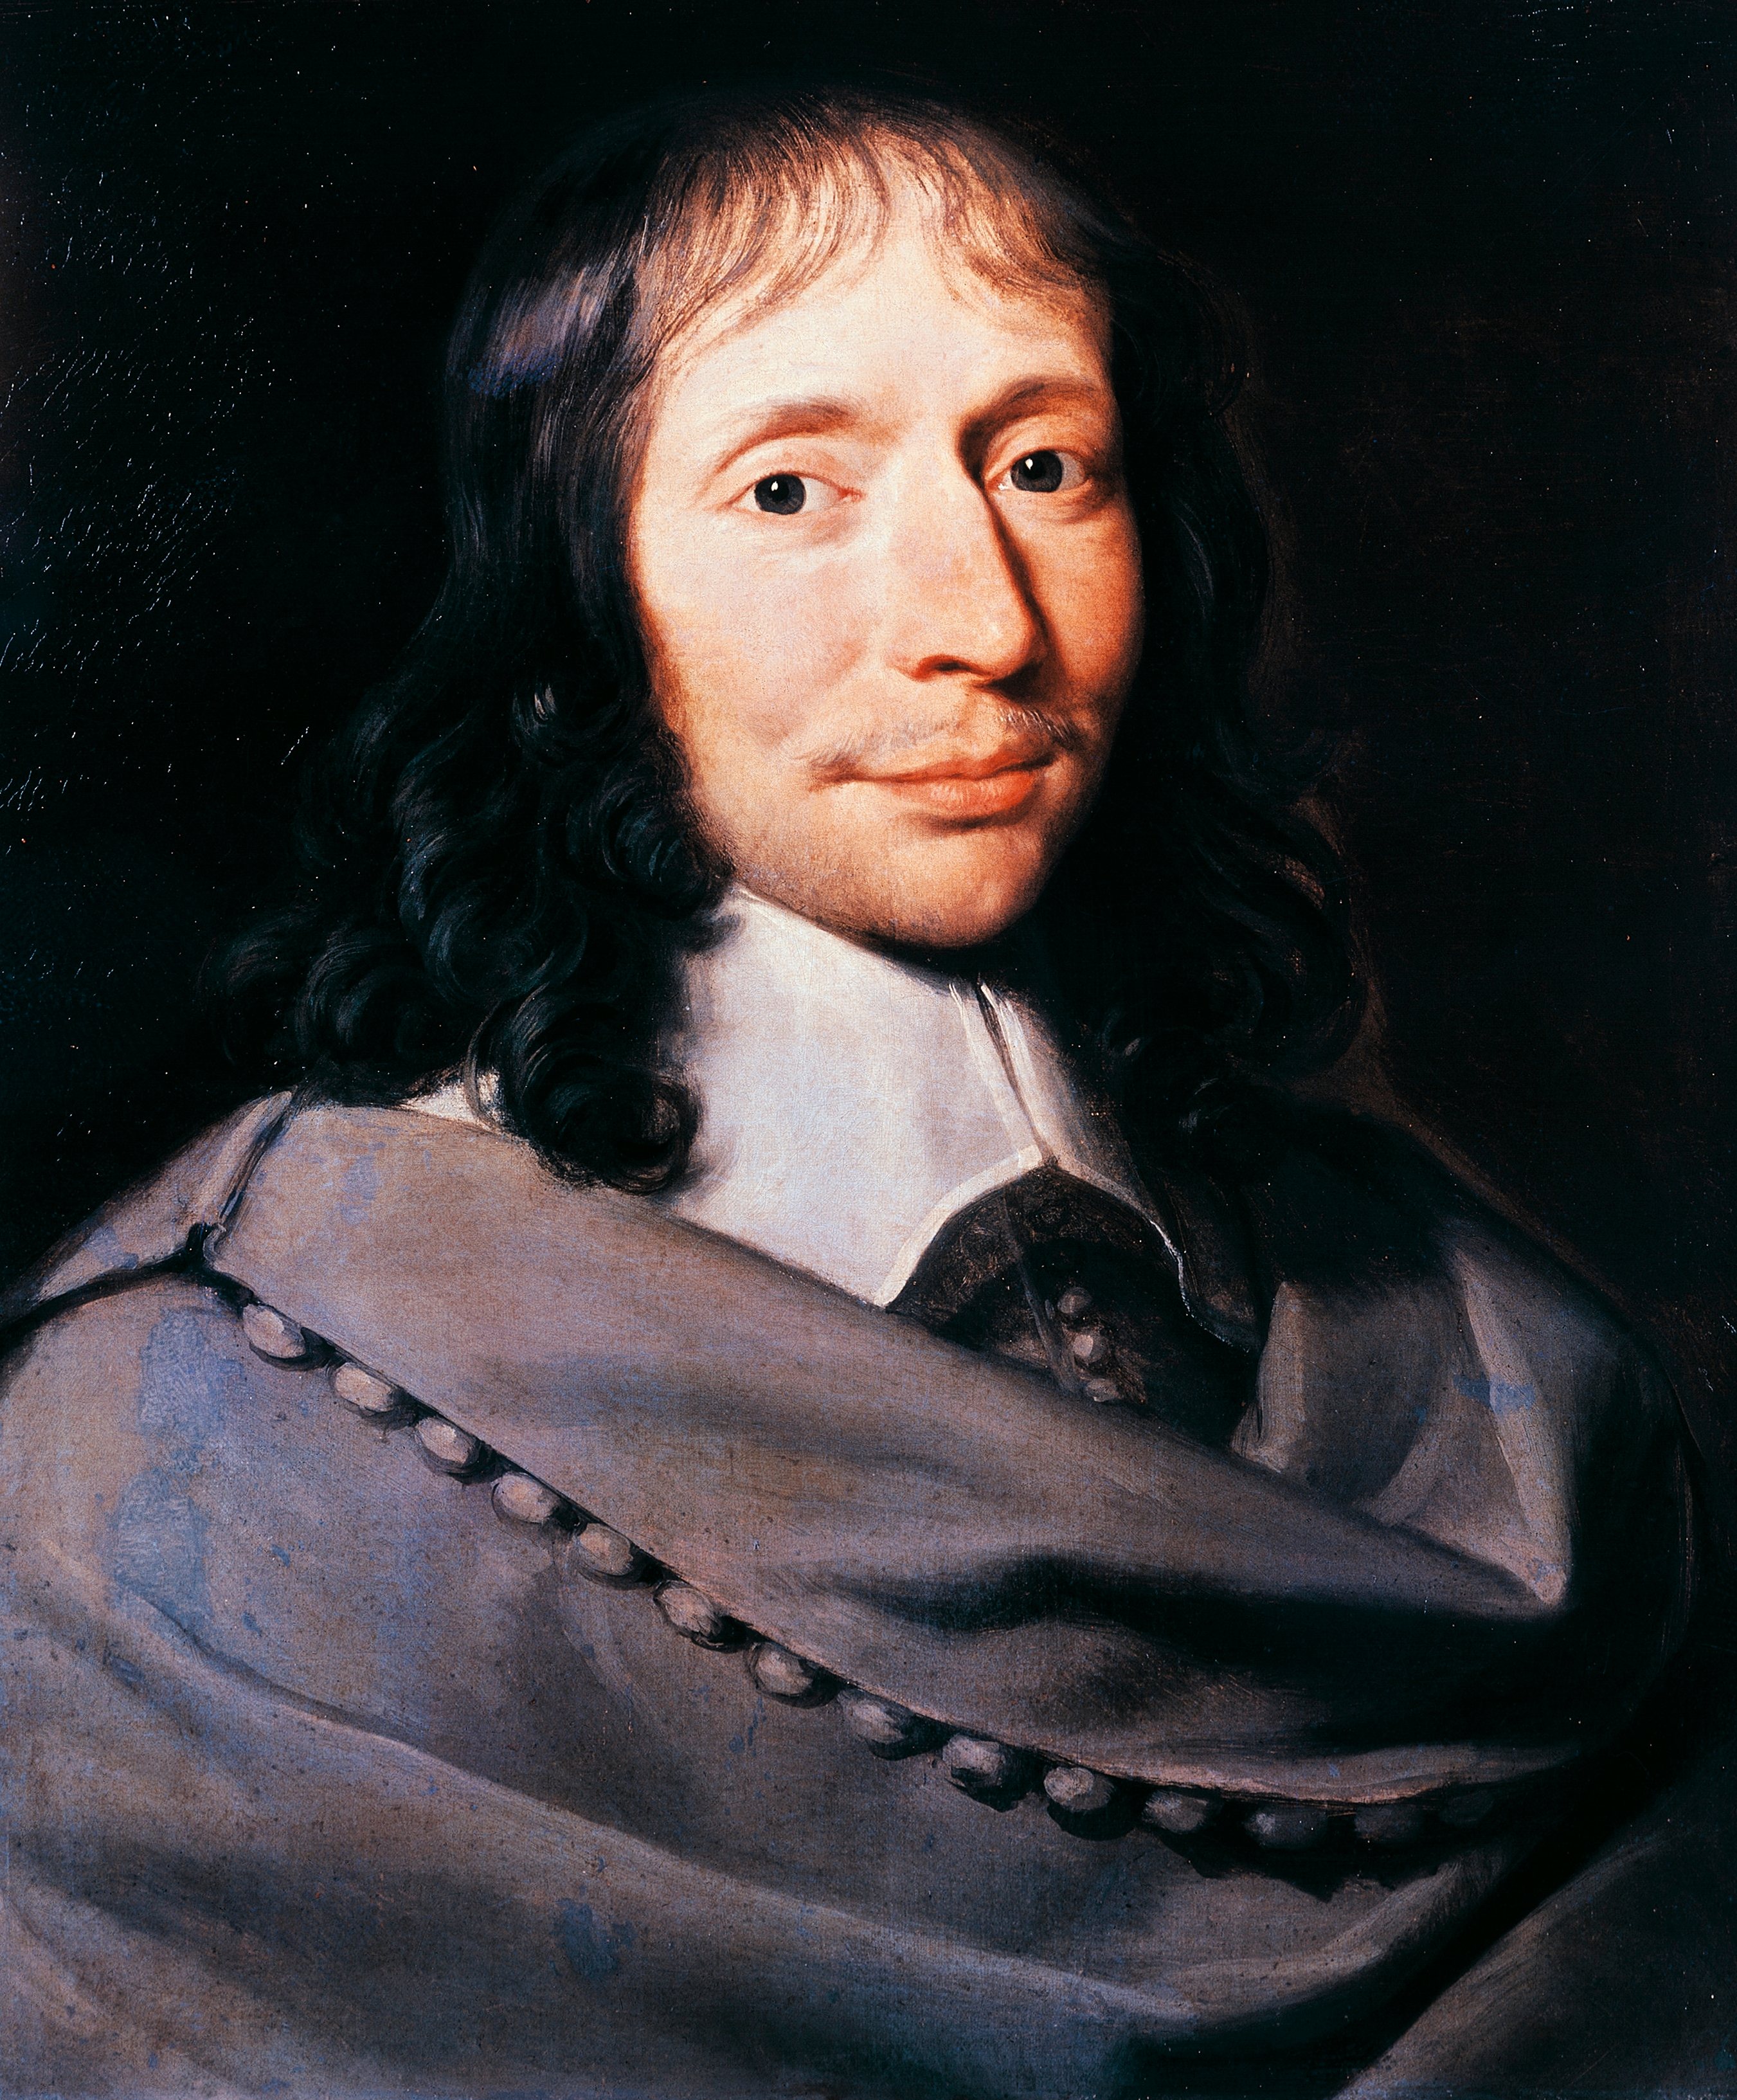 Portrait of Blaise Pascal